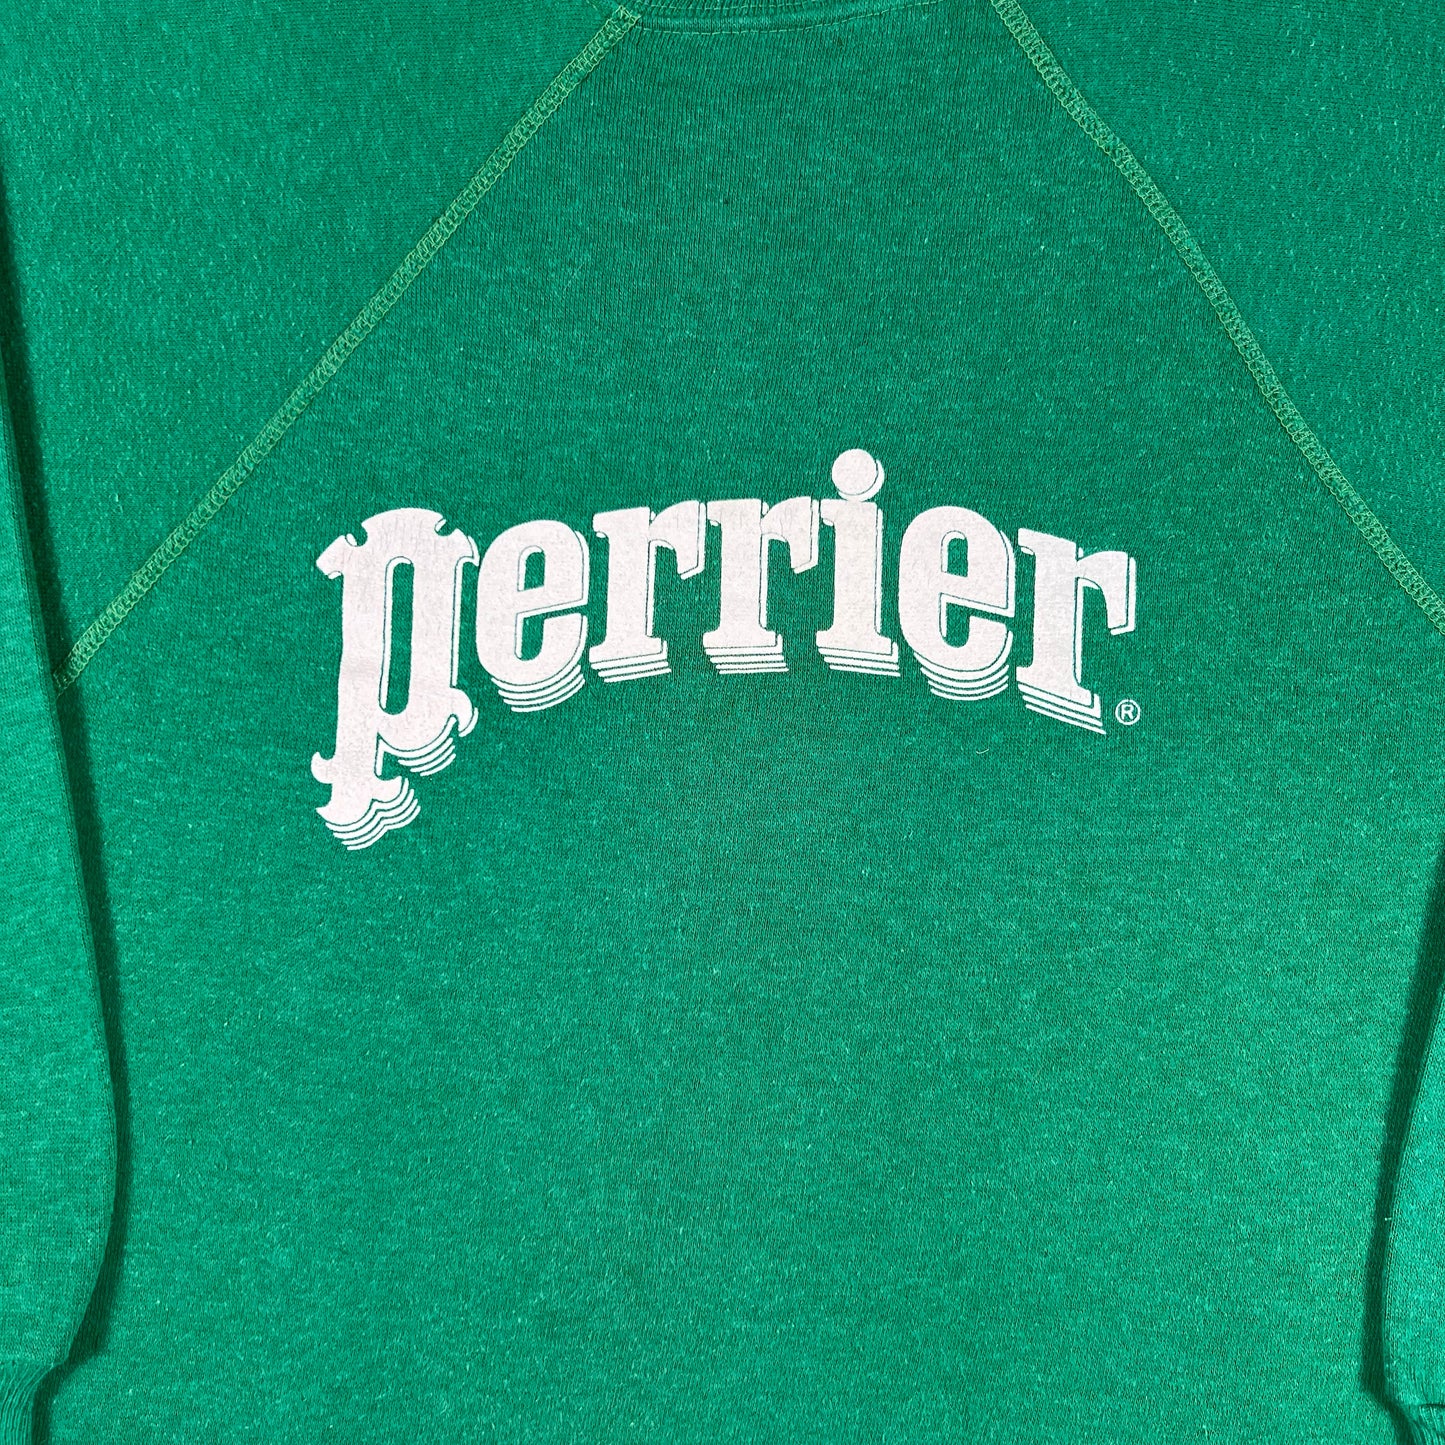 70s Perrier Sweatshirt- S